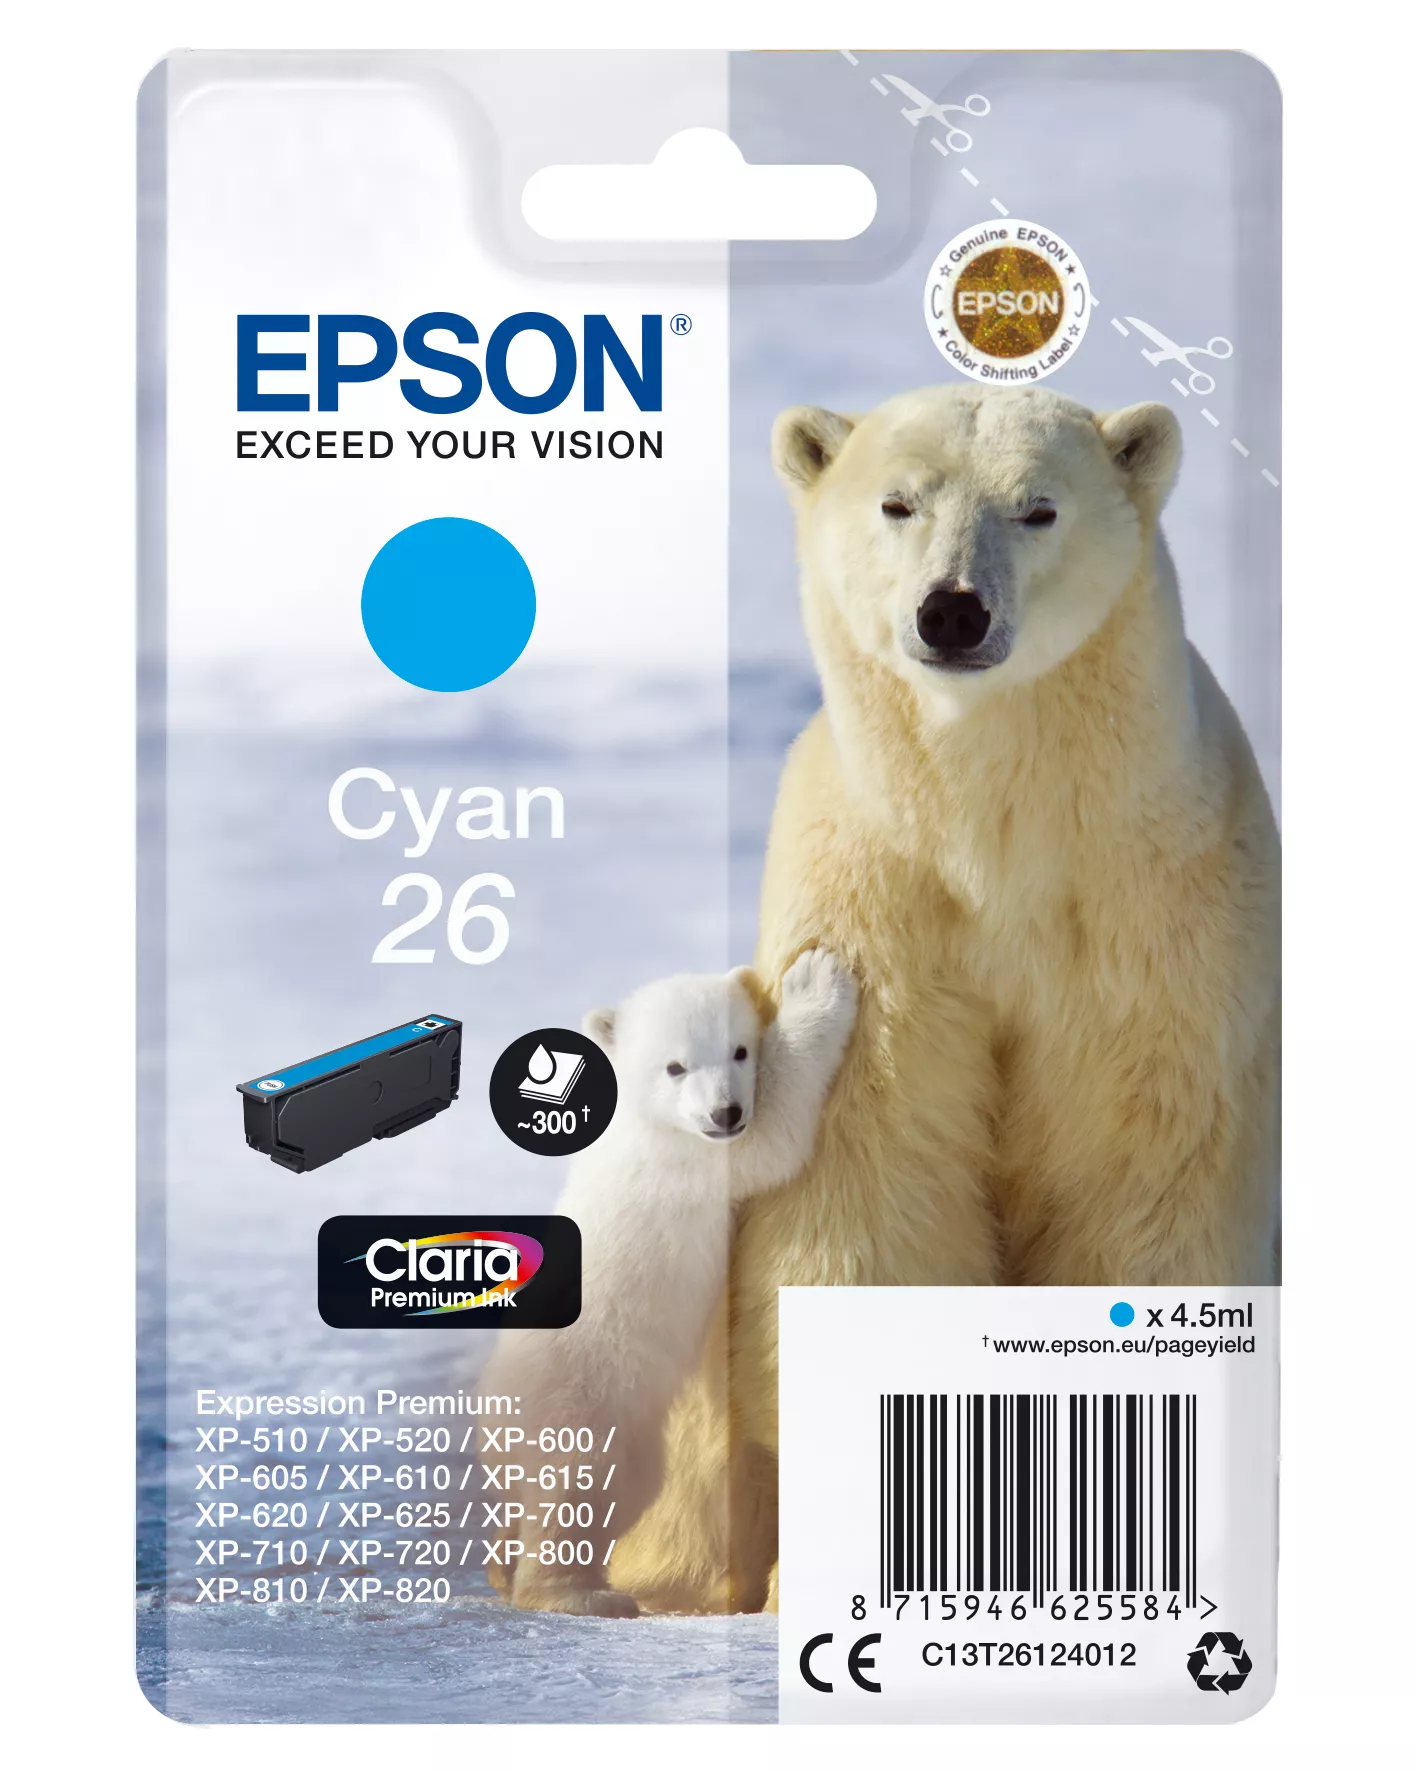 Achat EPSON 26 cartouche dencre cyan capacité standard 4.5ml au meilleur prix